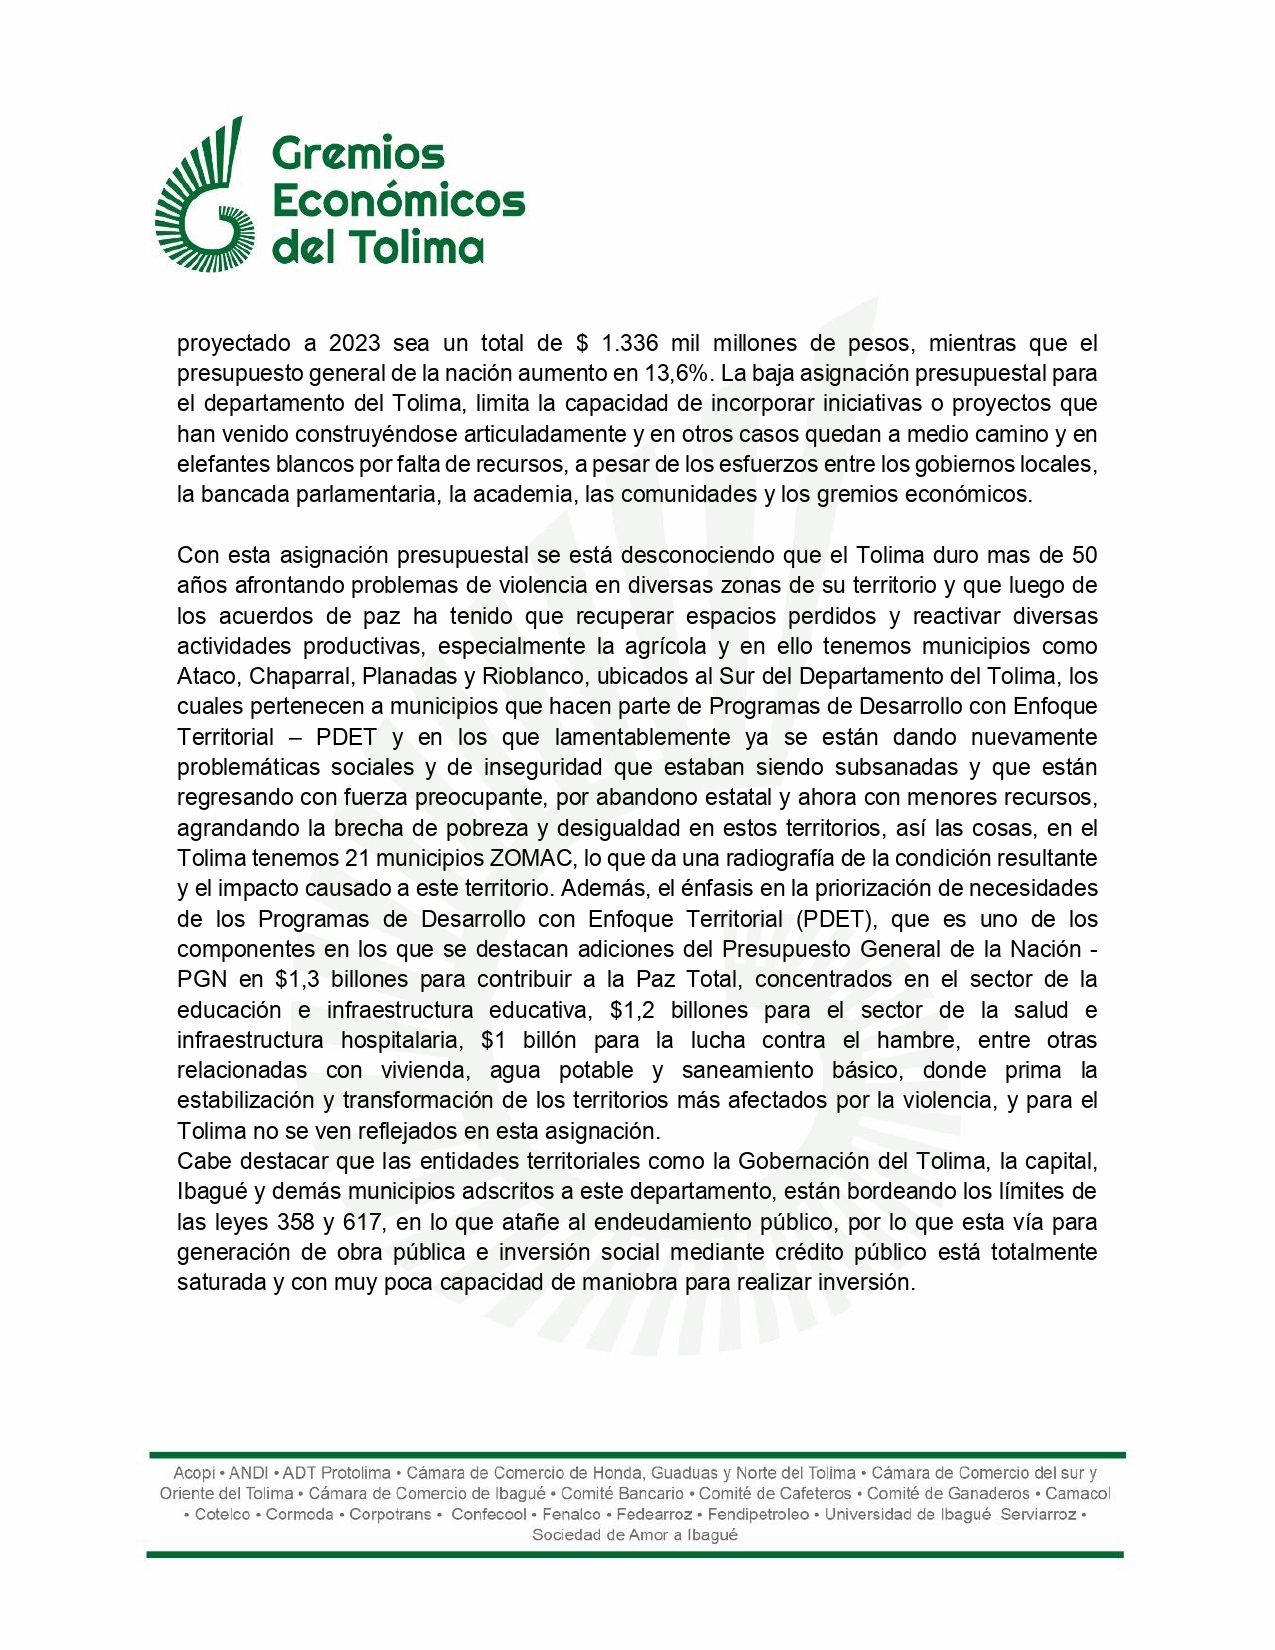 Esta es la carta que los Gremios Económicos del Tolima le enviaron al ministro de Hacienda